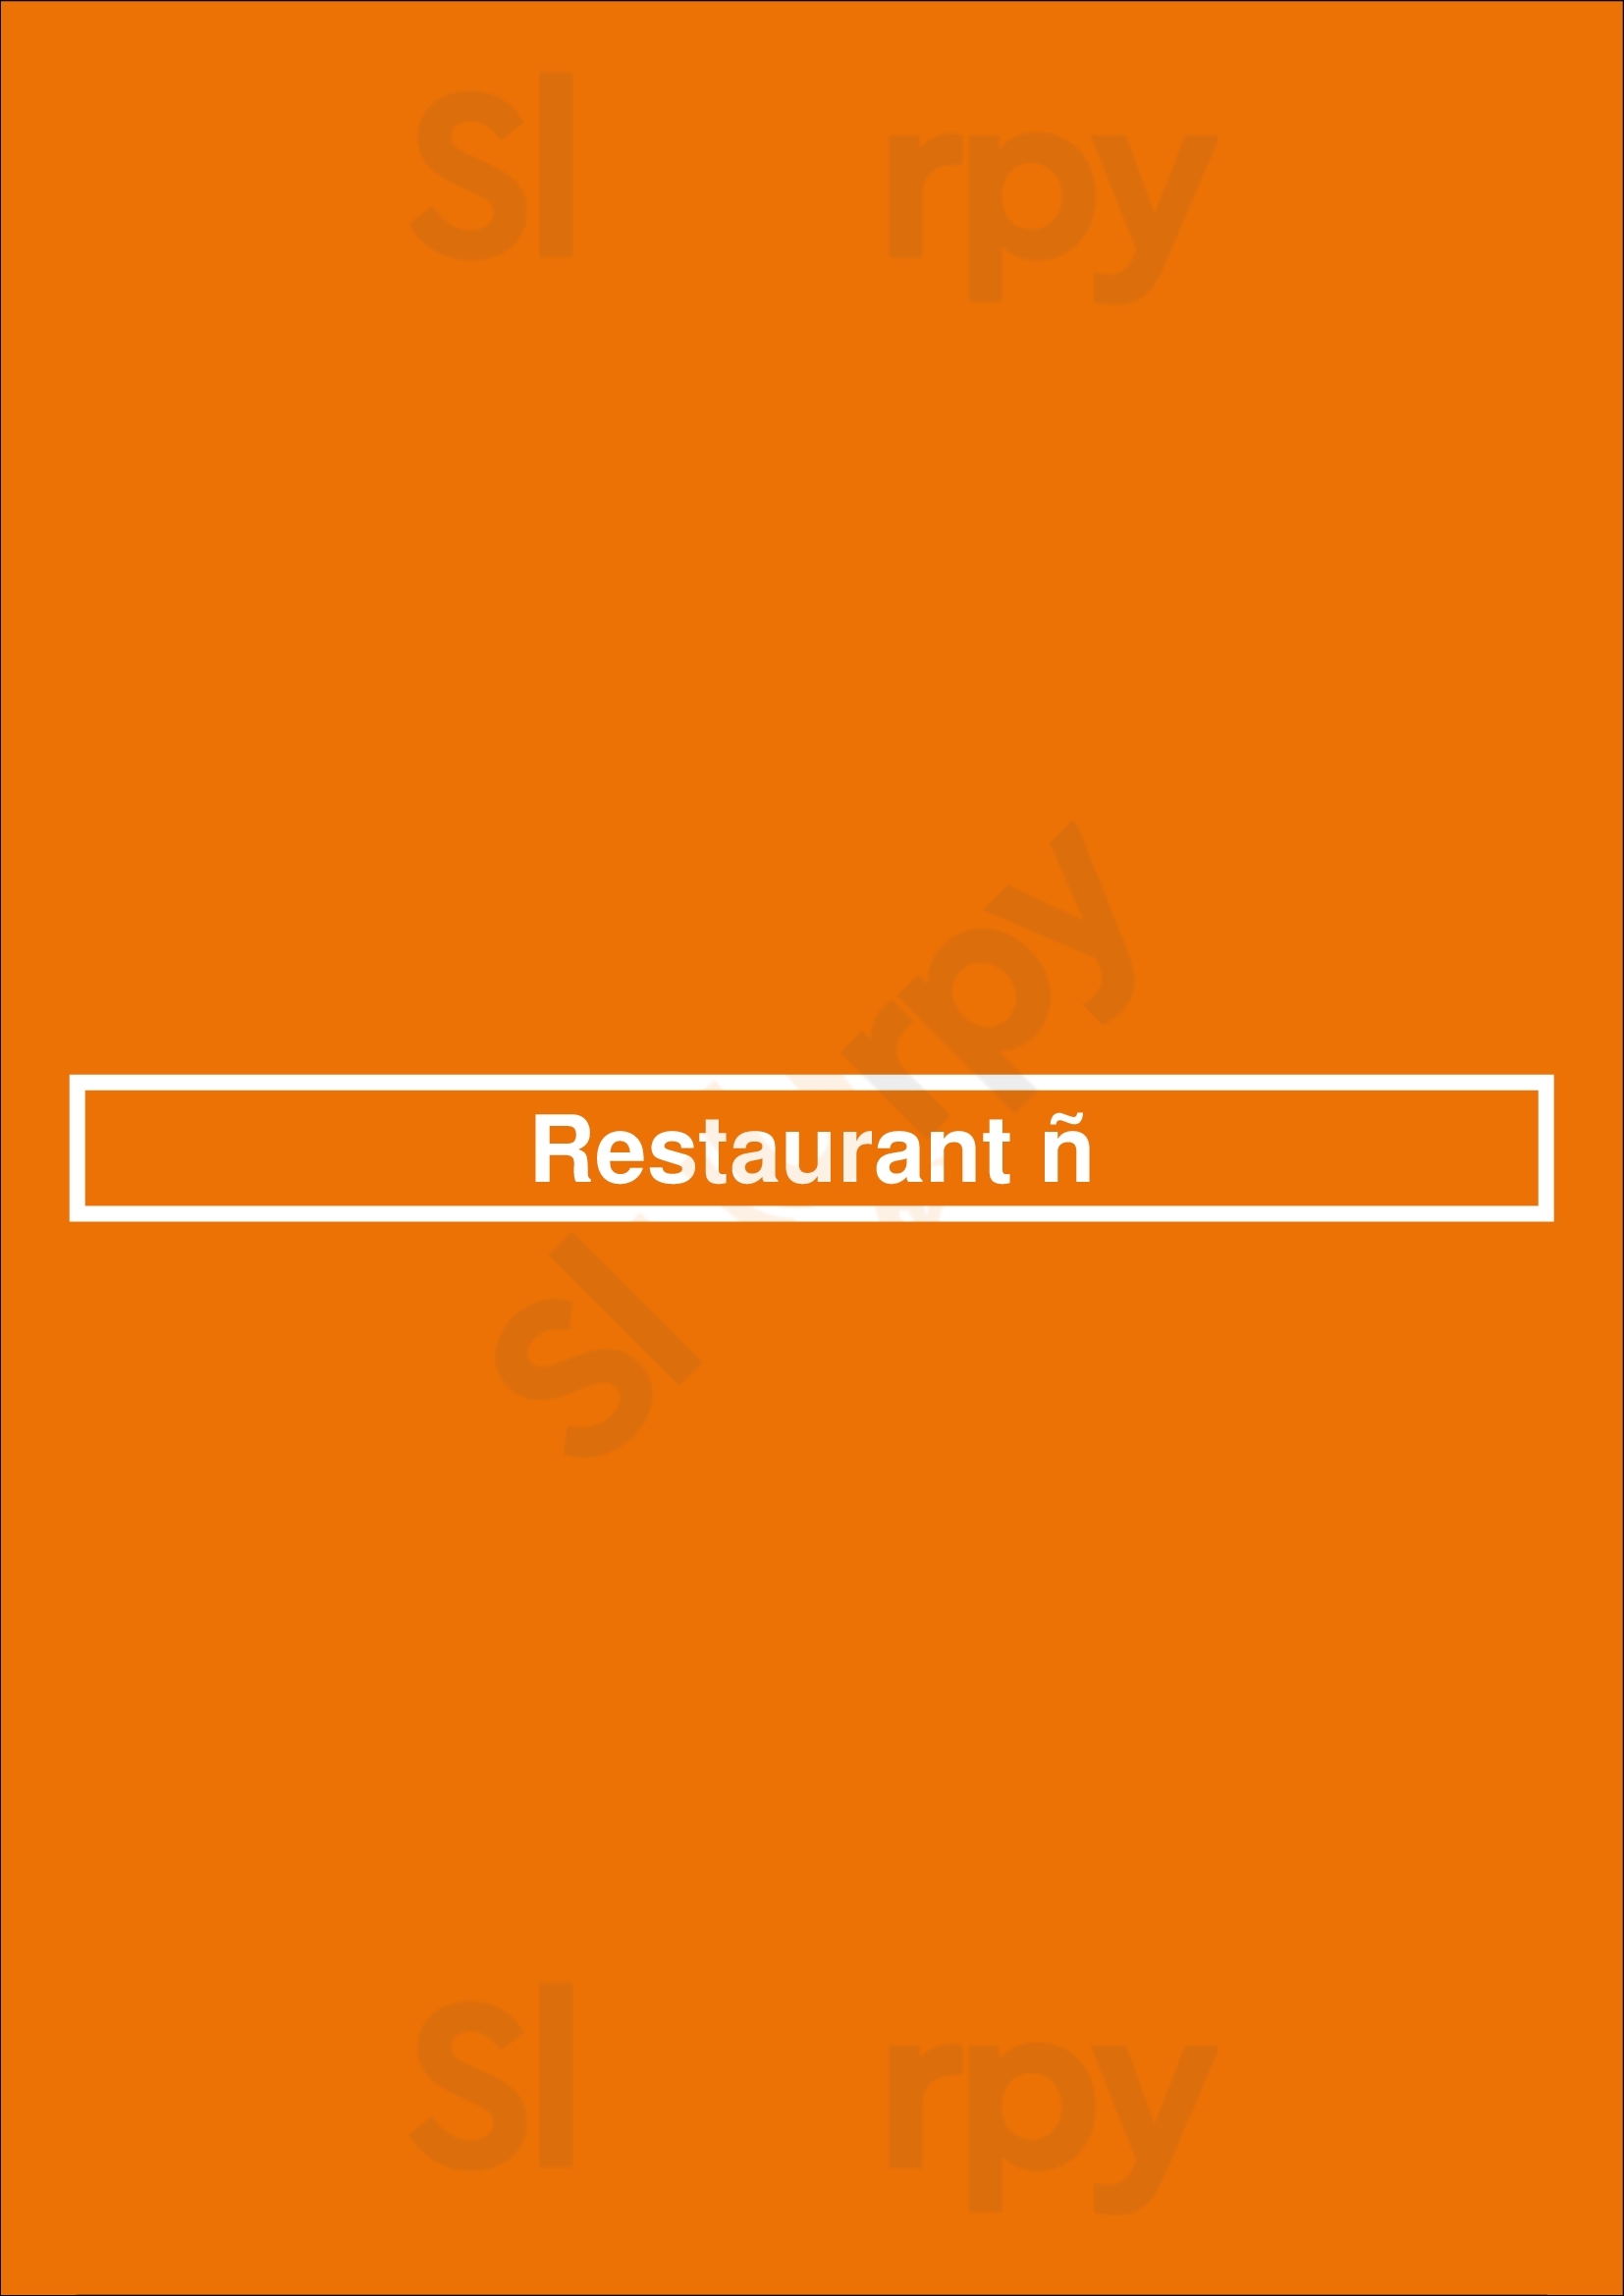 Restaurant ñ Den Haag Menu - 1